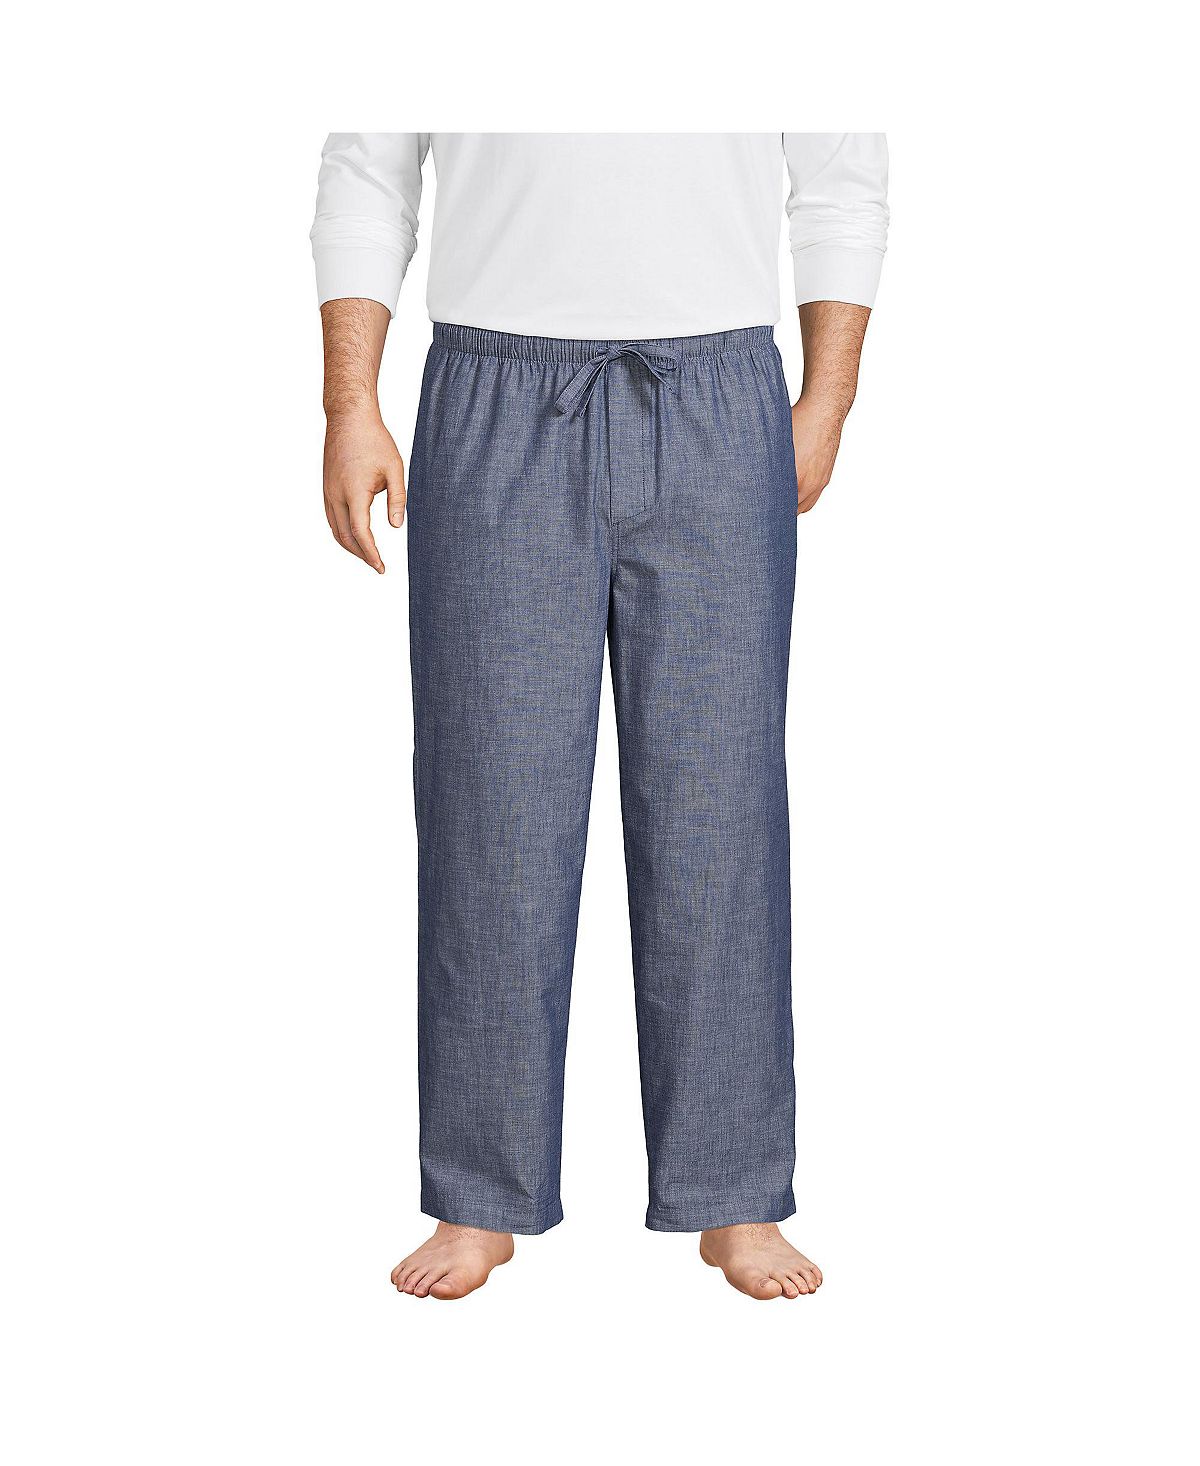 Мужские большие и высокие пижамные брюки из поплина Lands' End розовые классические пижамные штаны tom ford